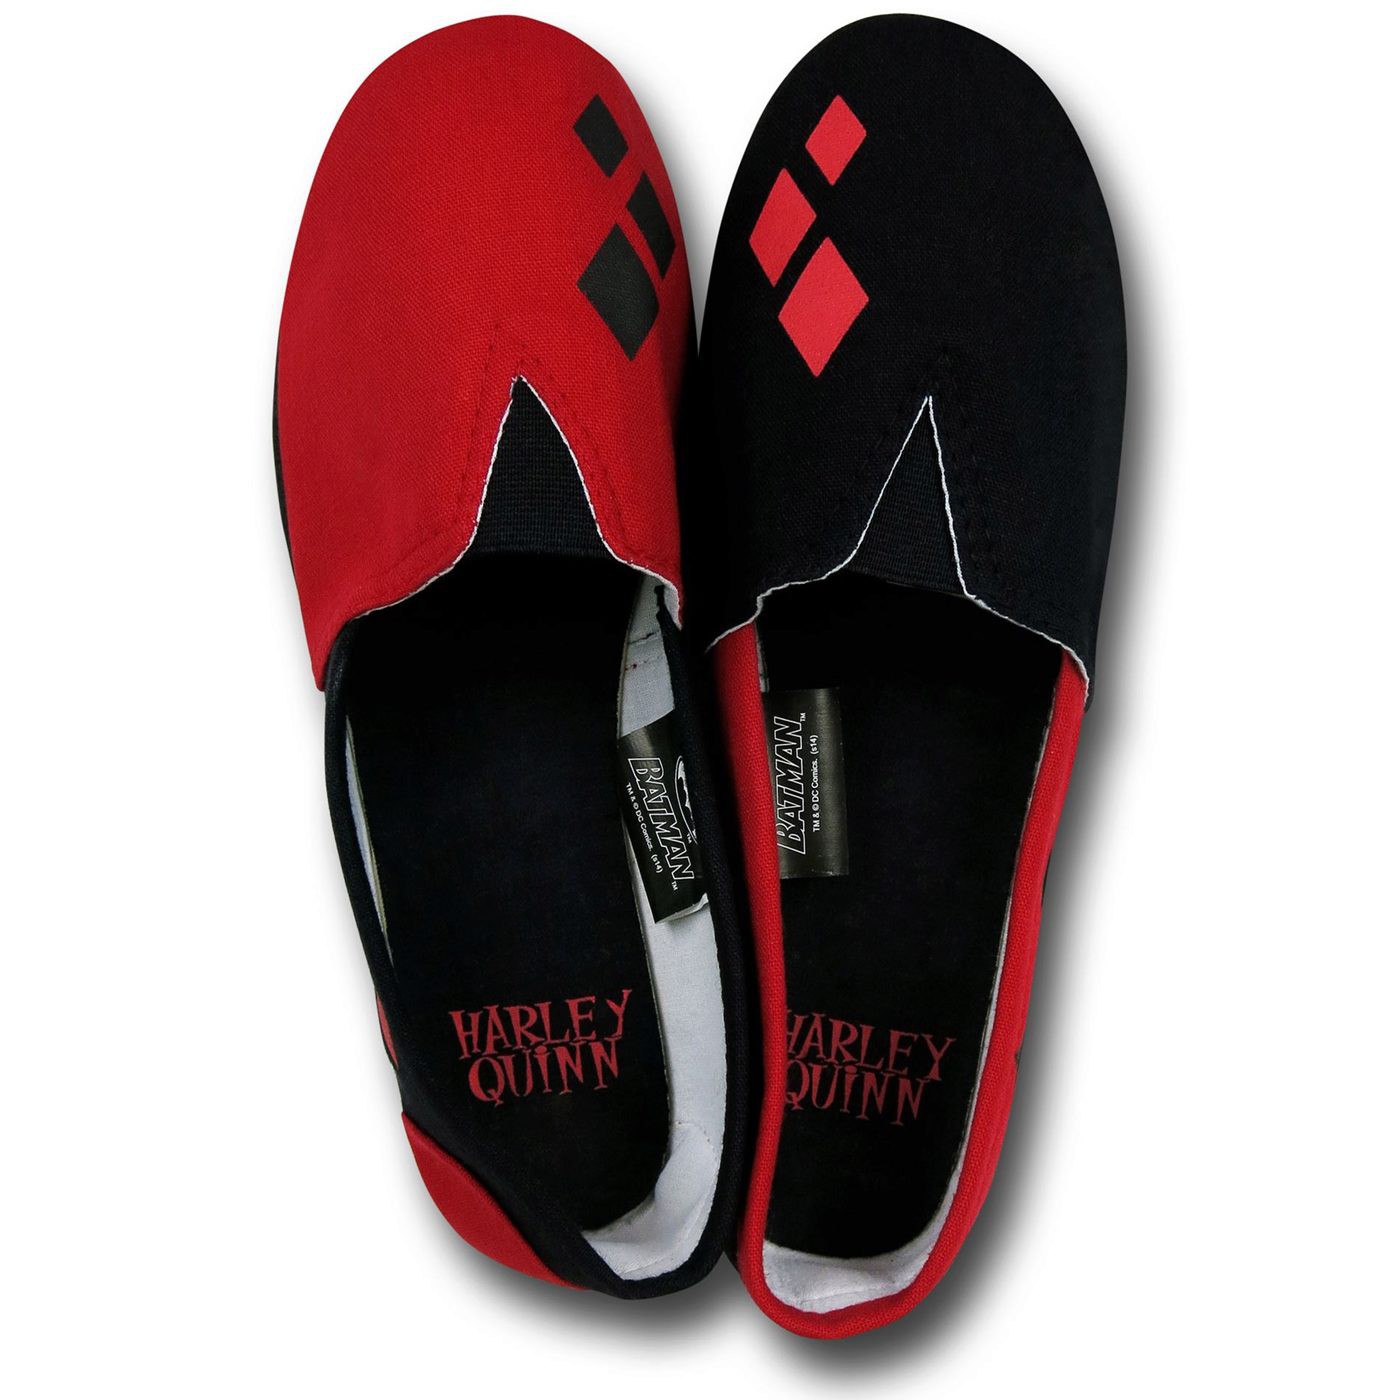 Harley Quinn All-Over Print Women's Slip-On Shoes